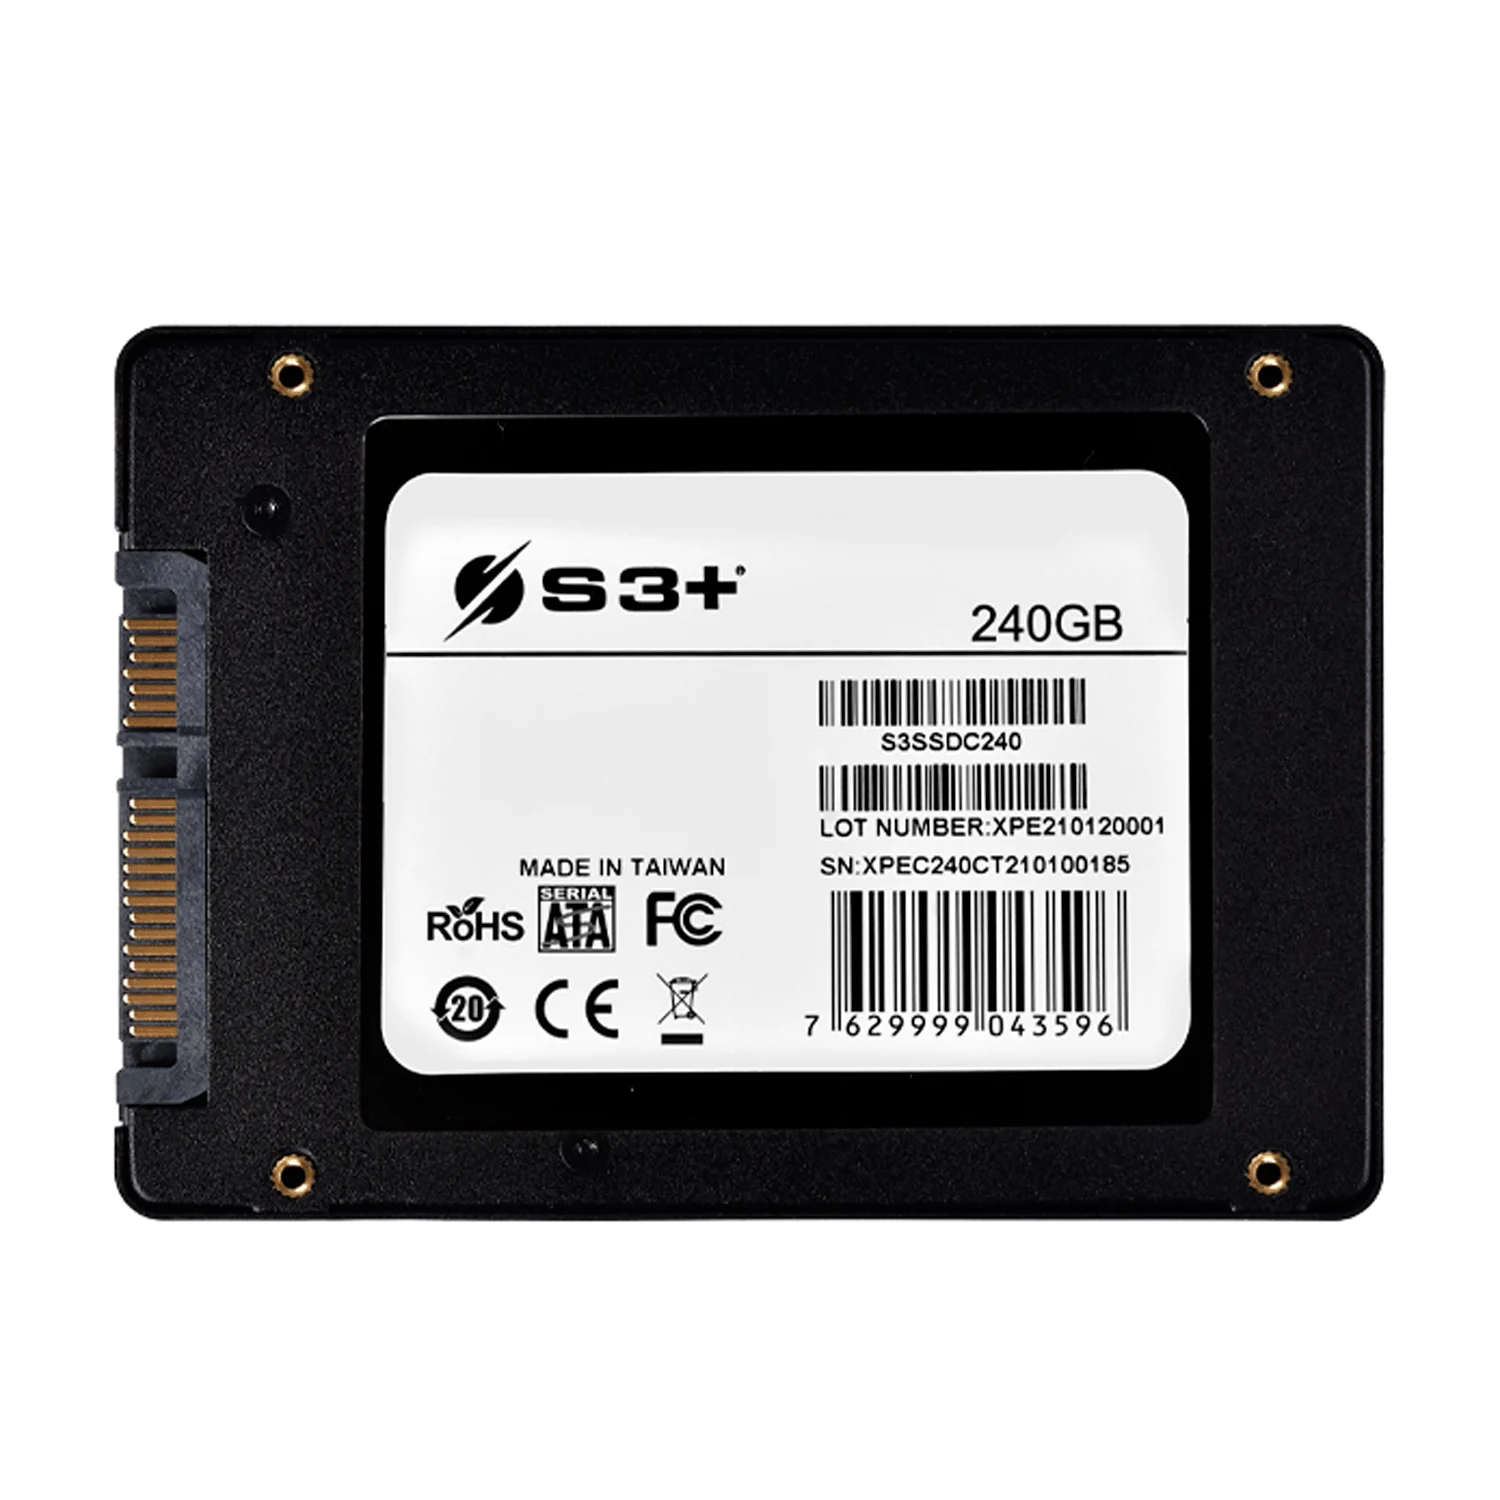 SSD S3+ 240GB 2.5" SATA 3 562 MB/S - S3SSDC240